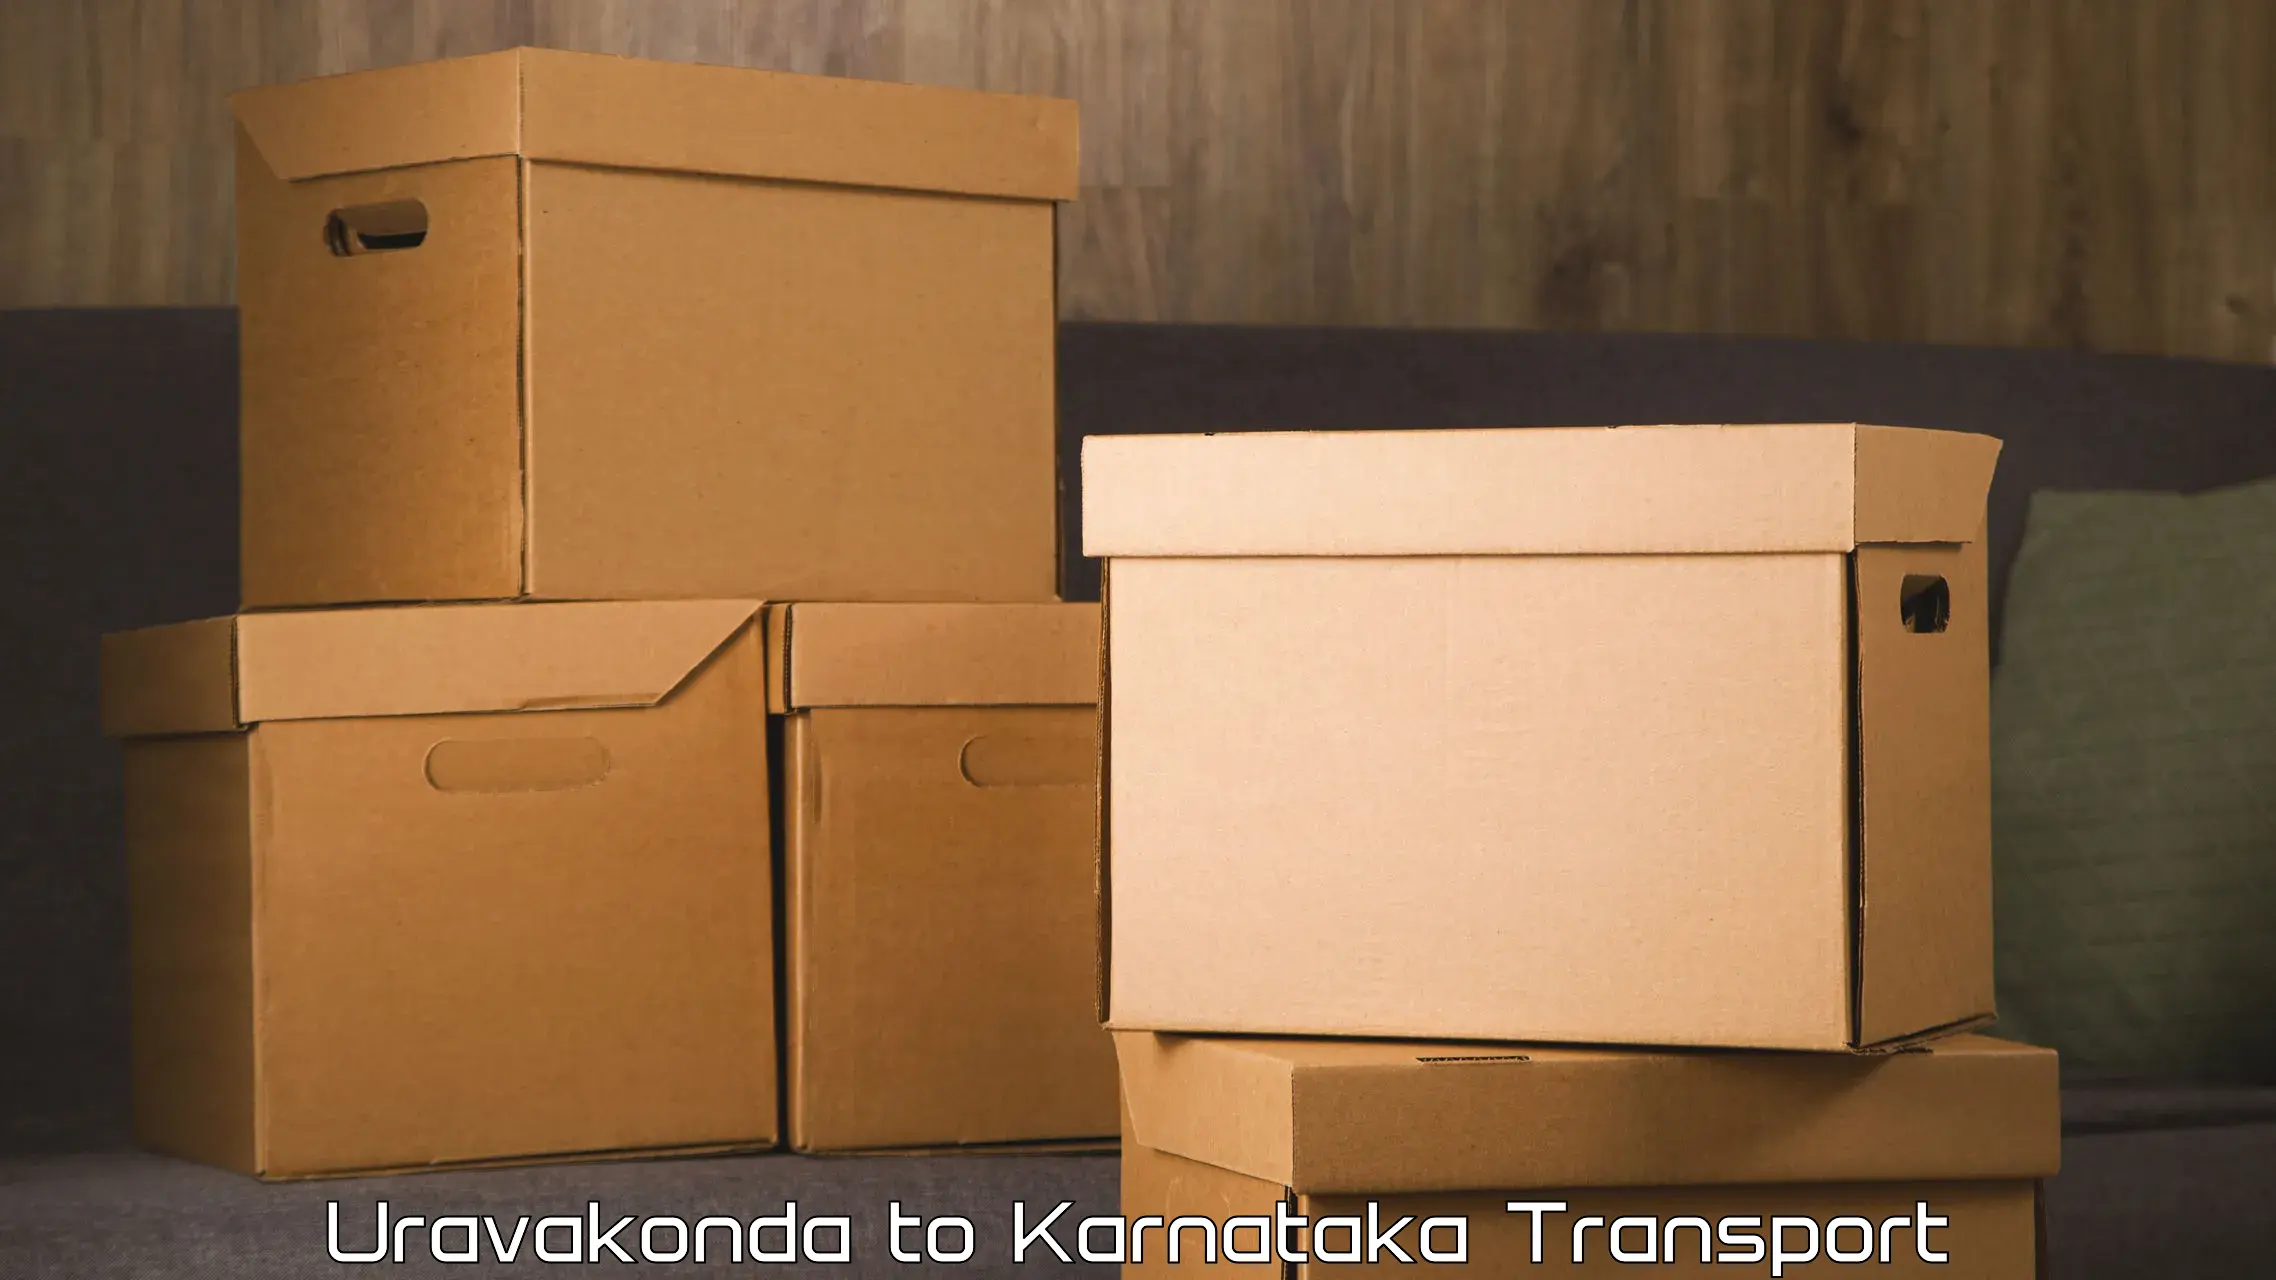 Transport in sharing Uravakonda to Anavatti